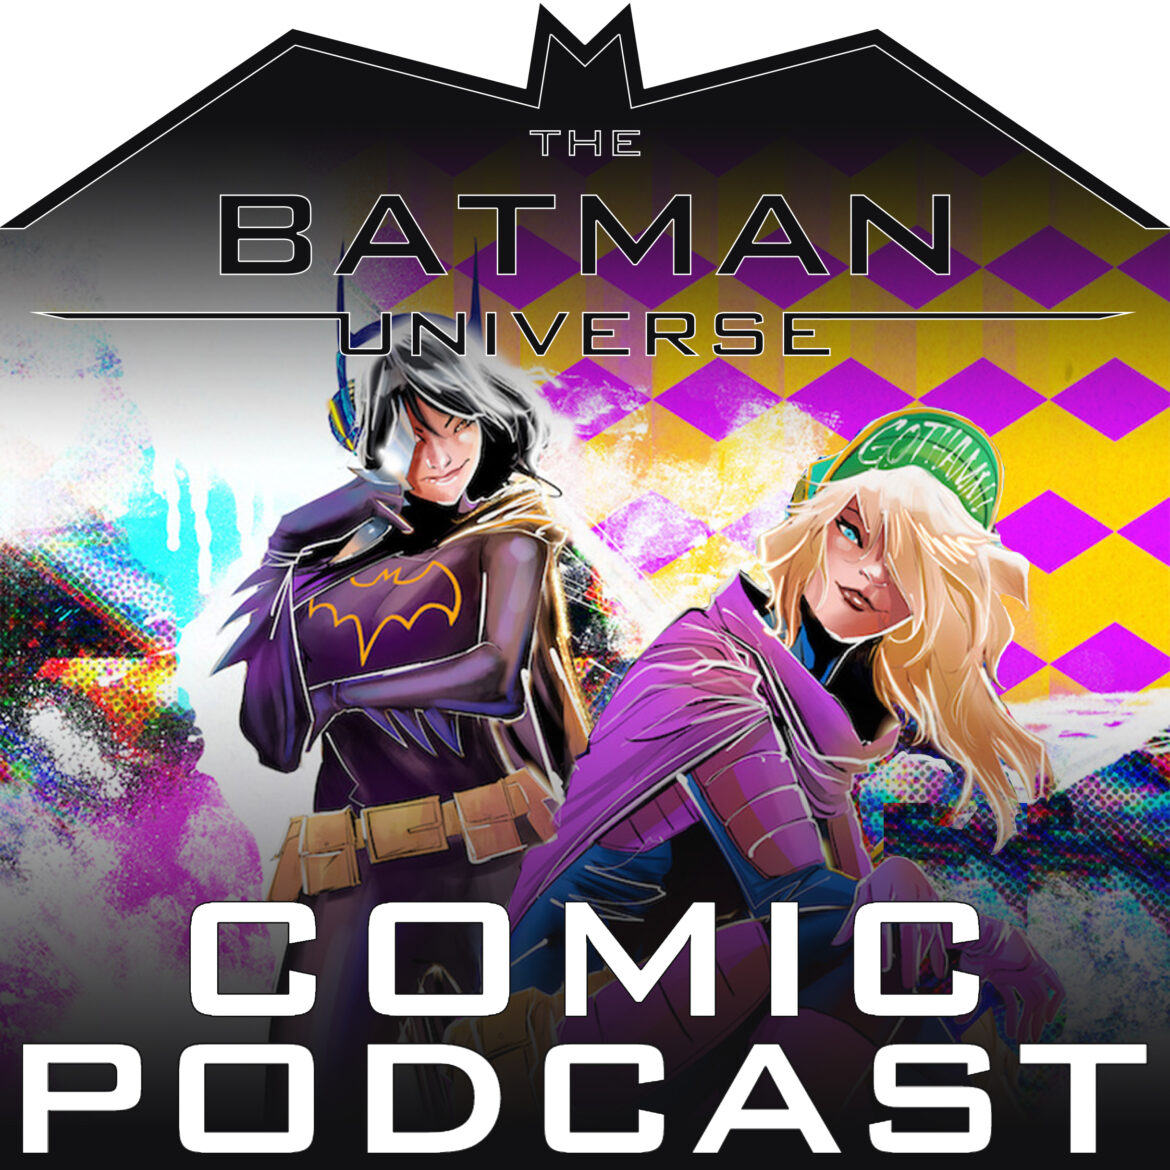 TBU Comic Podcast Season 15: Episode 8